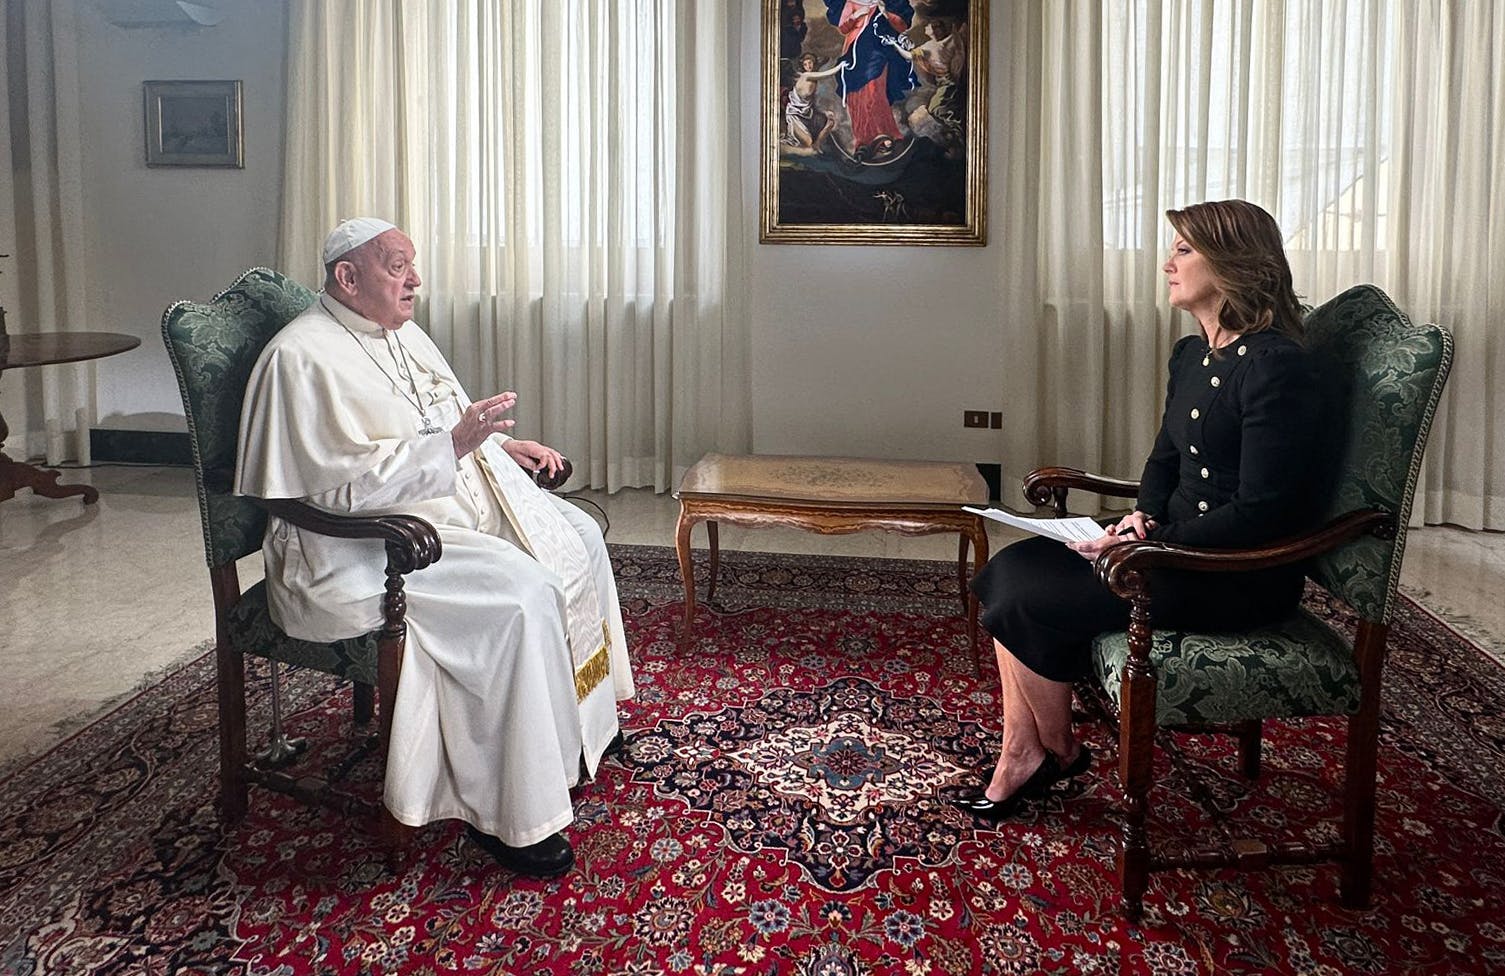 Vaticano, entrevista exclusiva de la CBS con el Papa en la JMN: ¡Estoy bien! Los niños te ayudan a tener un corazón joven.